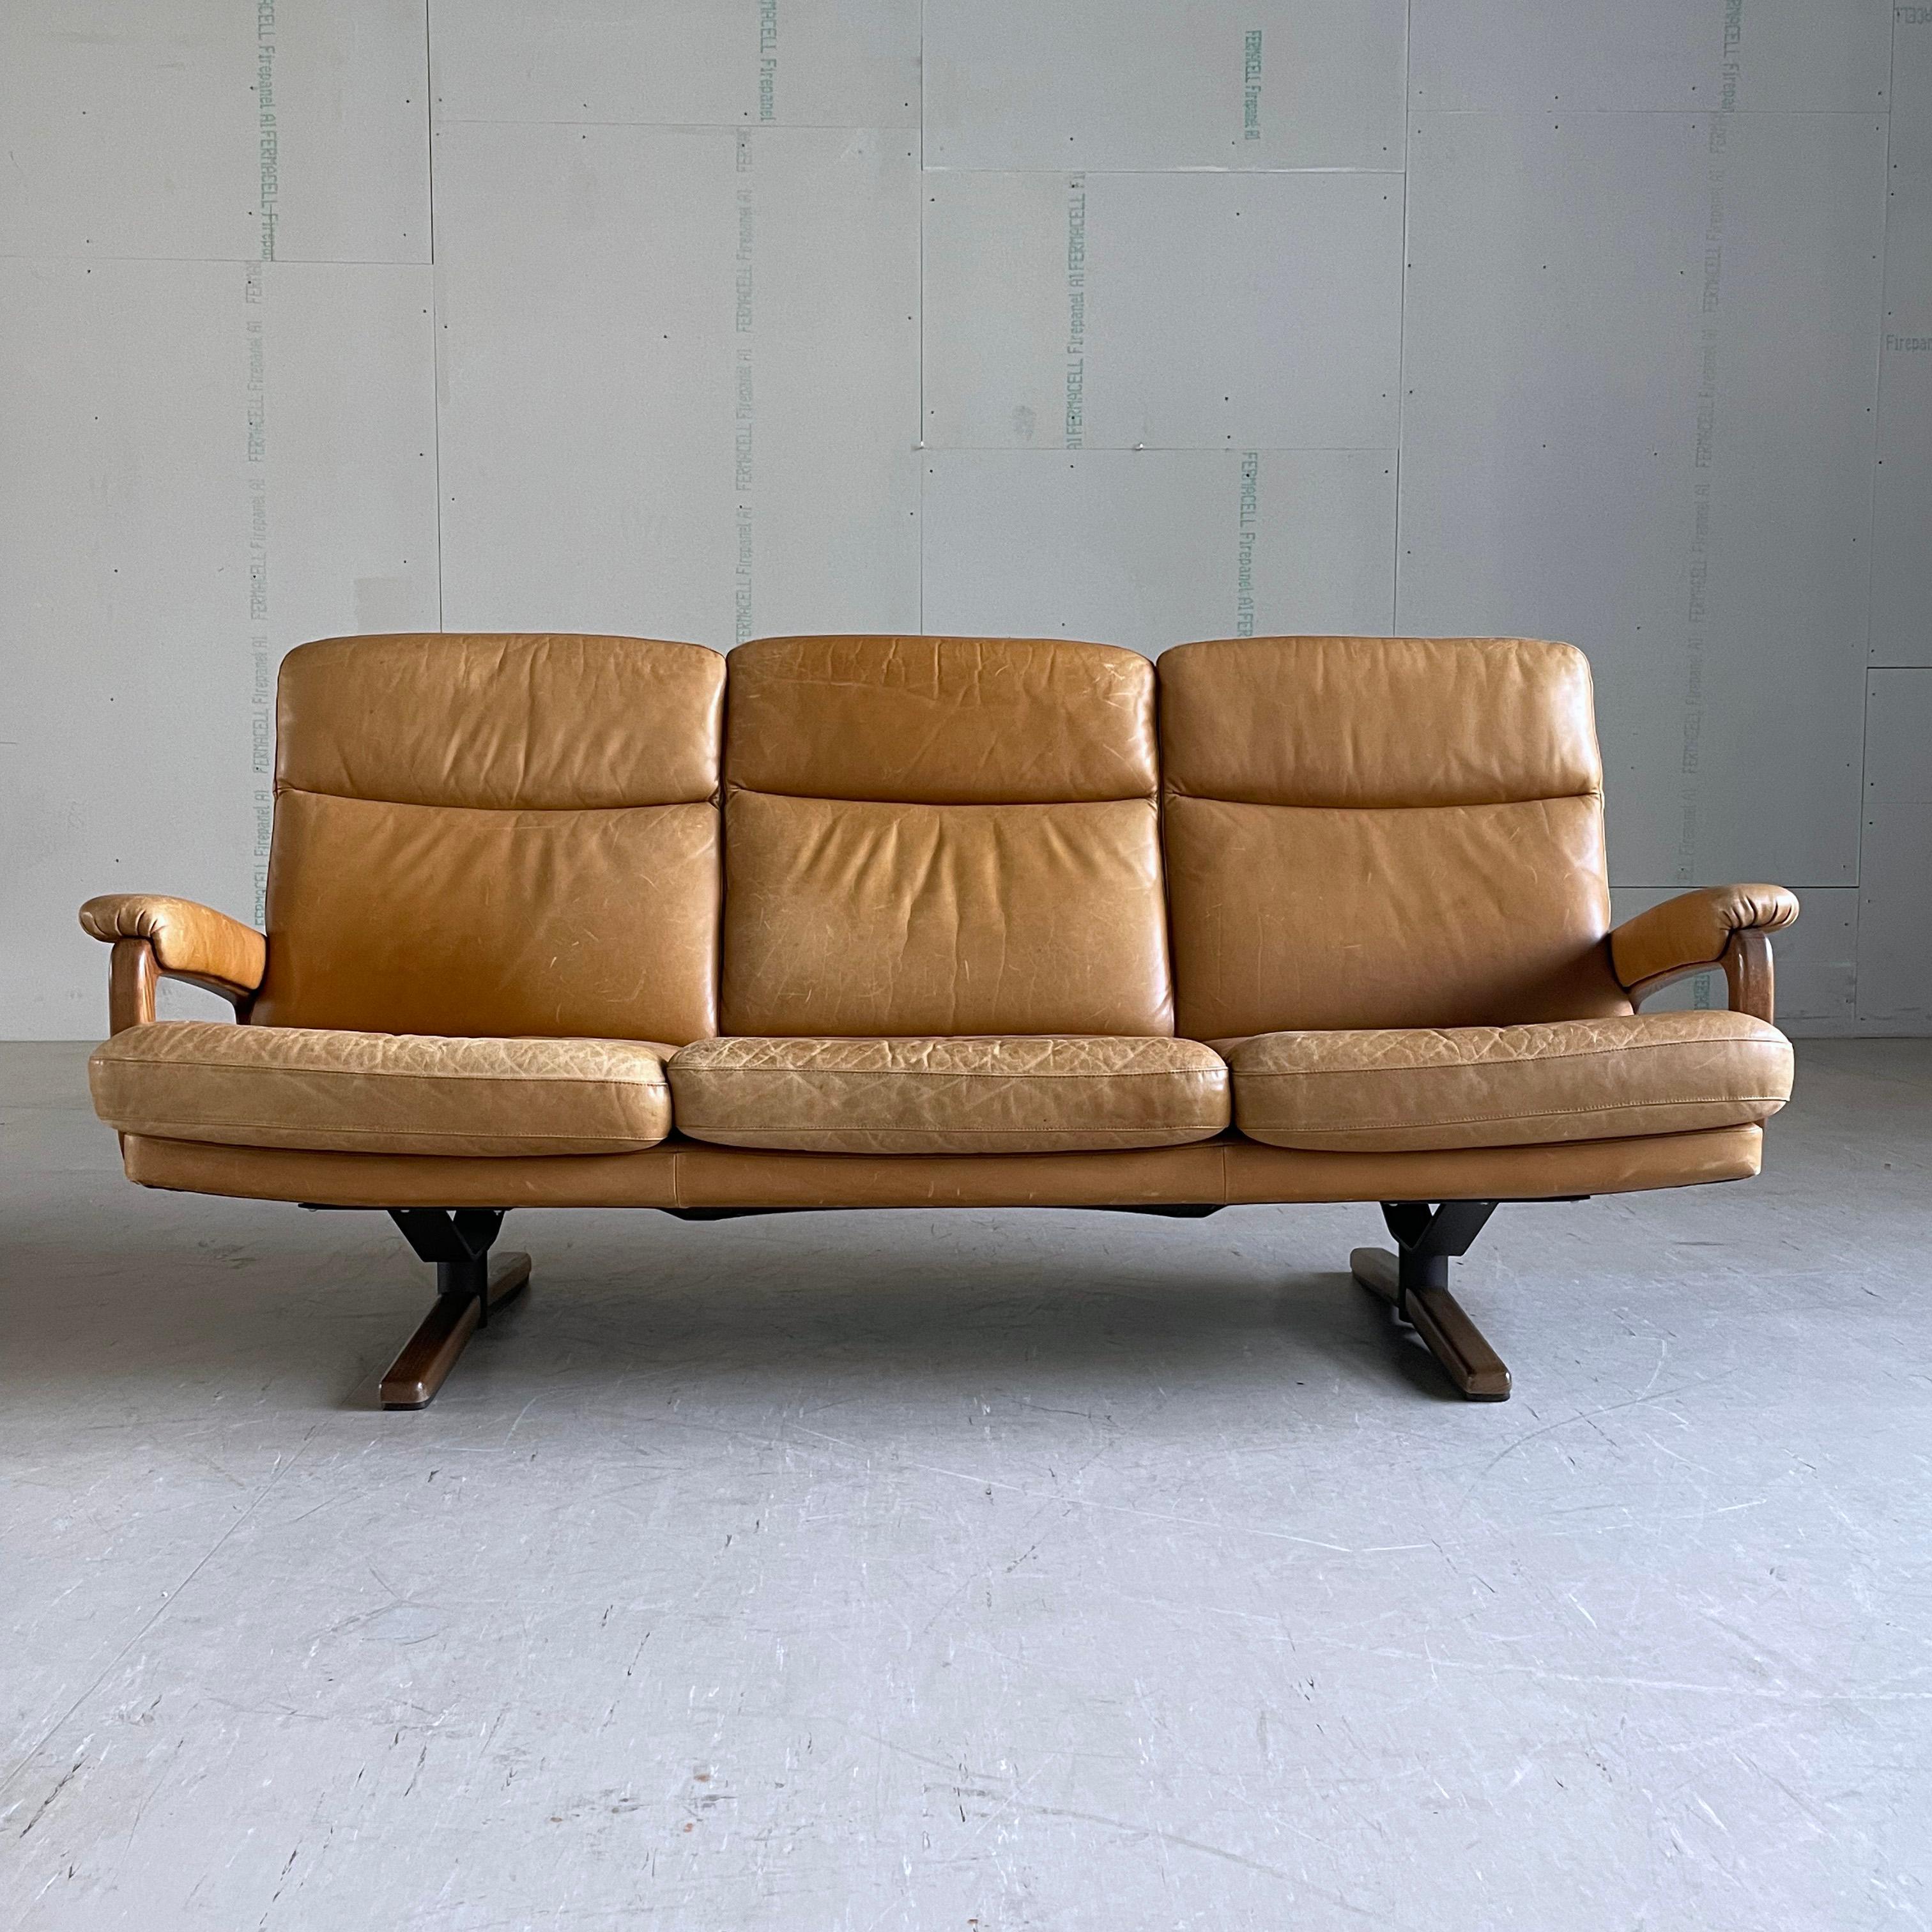 3-Sitzer-Sofa aus den 1960er Jahren aus hochwertigem gegerbtem Leder. Entworfen von André Vandenbeuck und hergestellt von Strässle, Schweiz. 
Das Leder ist in einem sehr guten Allgemeinzustand mit normalen Gebrauchsspuren wie Schrammen und leichten